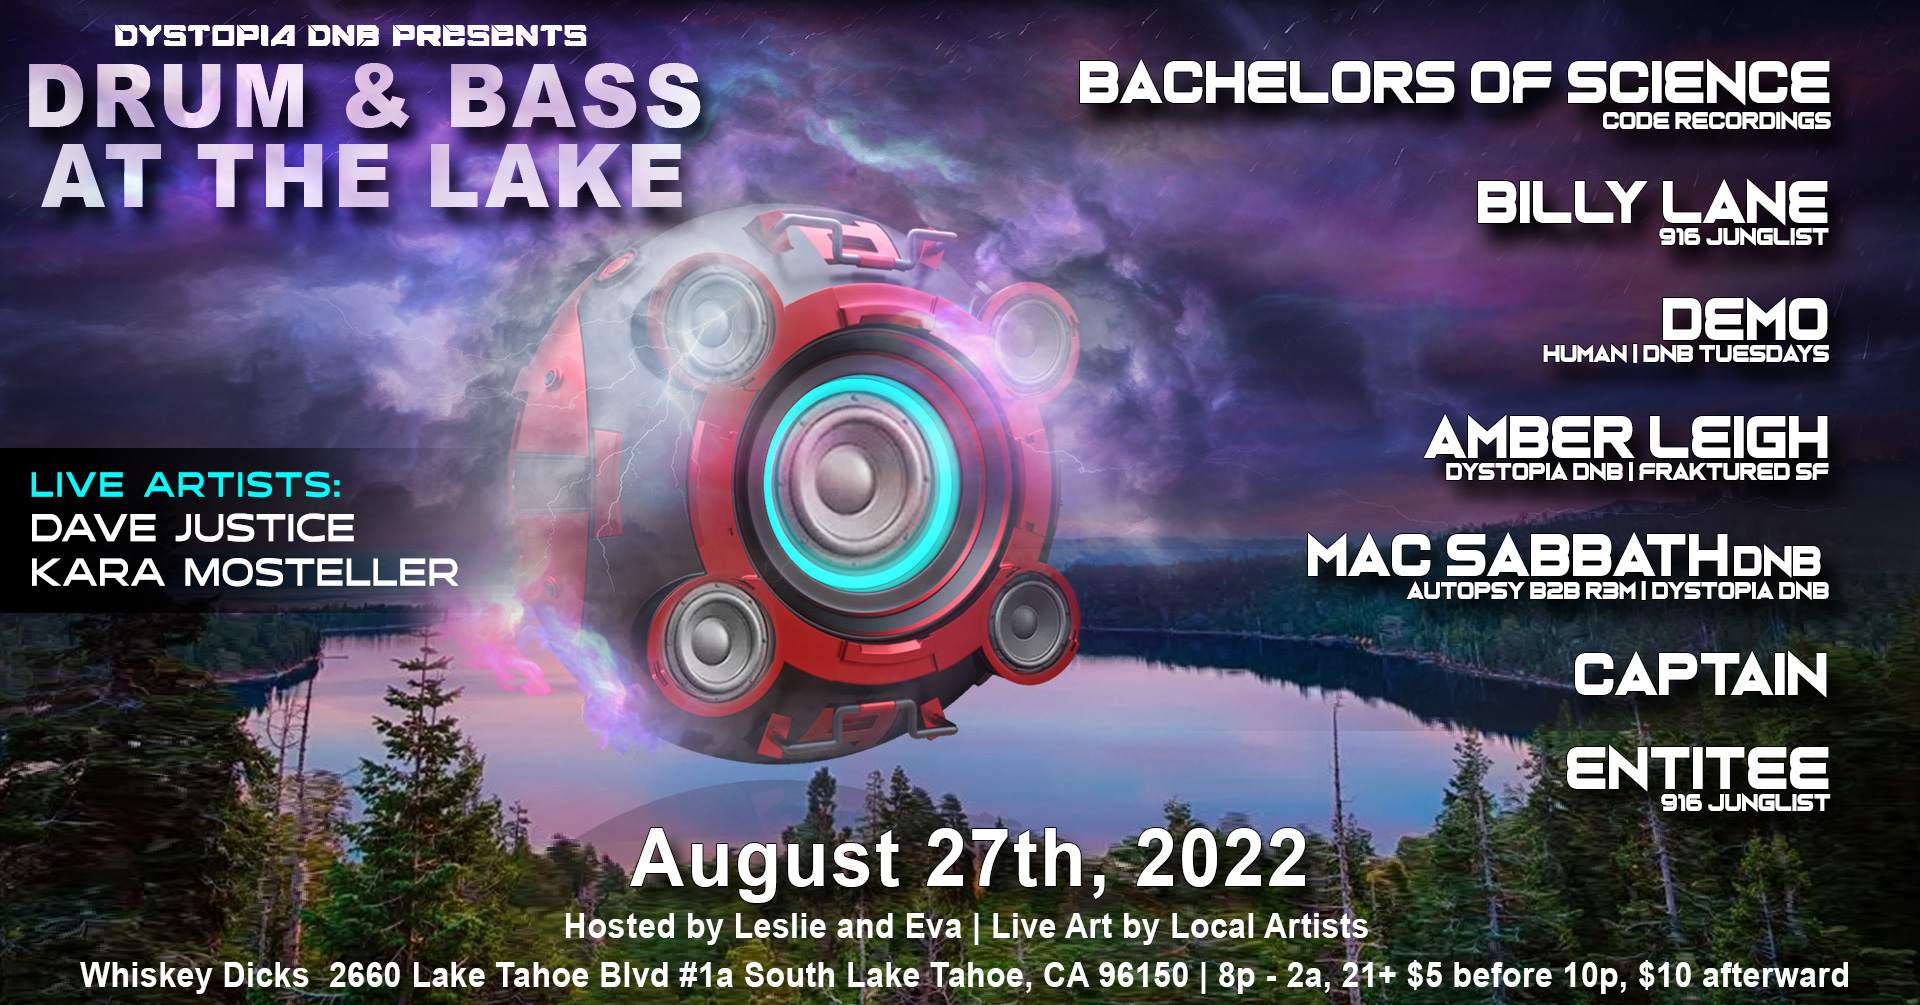 Dystopia DNB, Leslie and Eva presents 'Drum & Bass at The Lake' - Página trasera